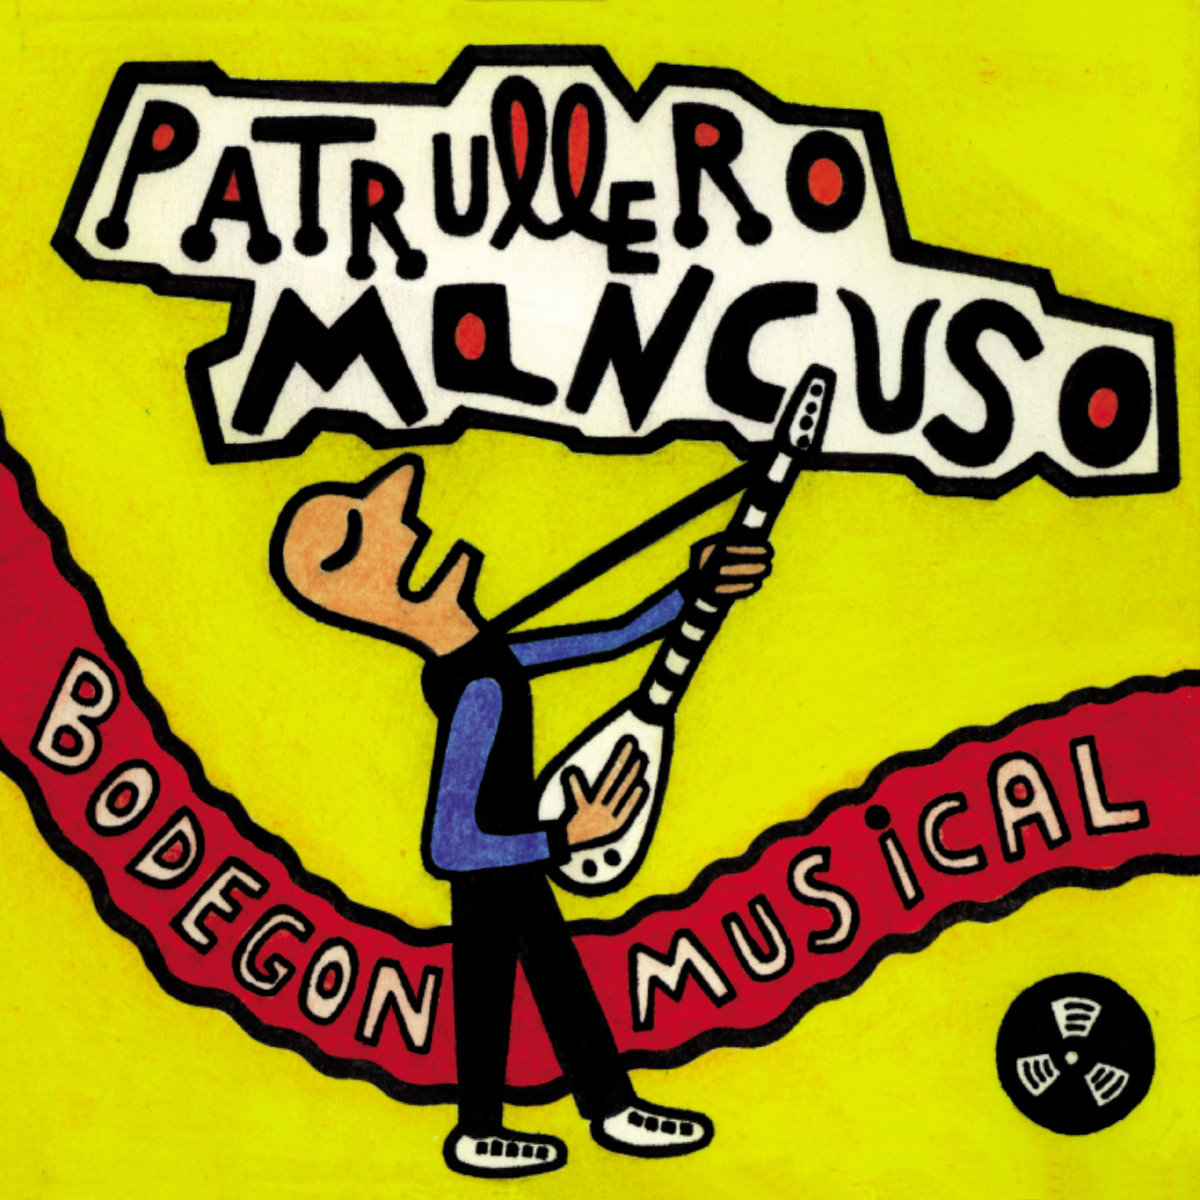 Patrullero Mancuso "Bodegón Musical" LP